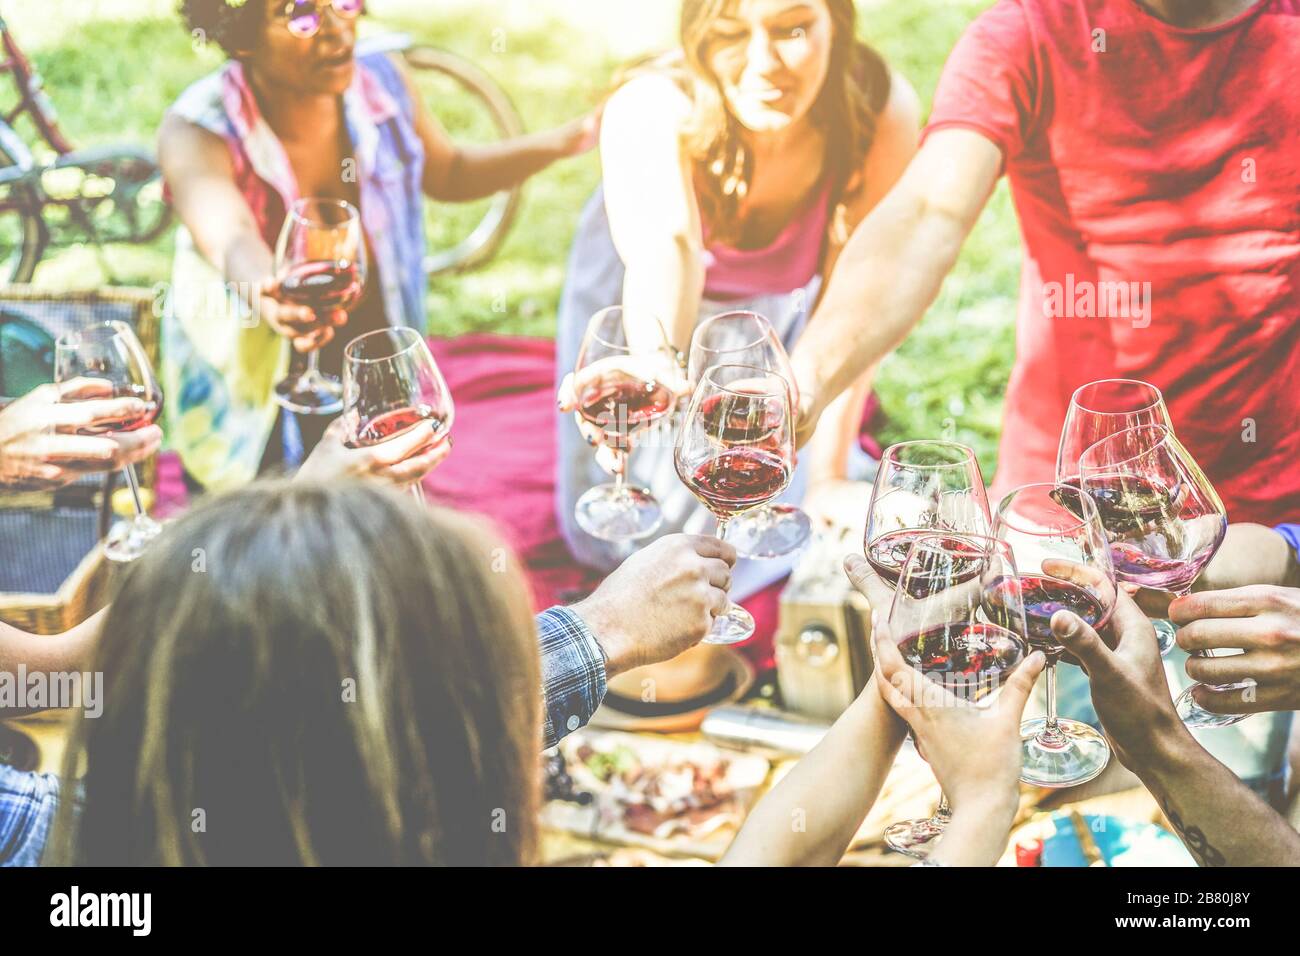 Eine Gruppe von Freunden, die ein Picknick genießen, während sie mit Rotwein jubeln und im Freien Imbiss-Vorspeisen essen - junge Leute trinken und Spaß haben Stockfoto